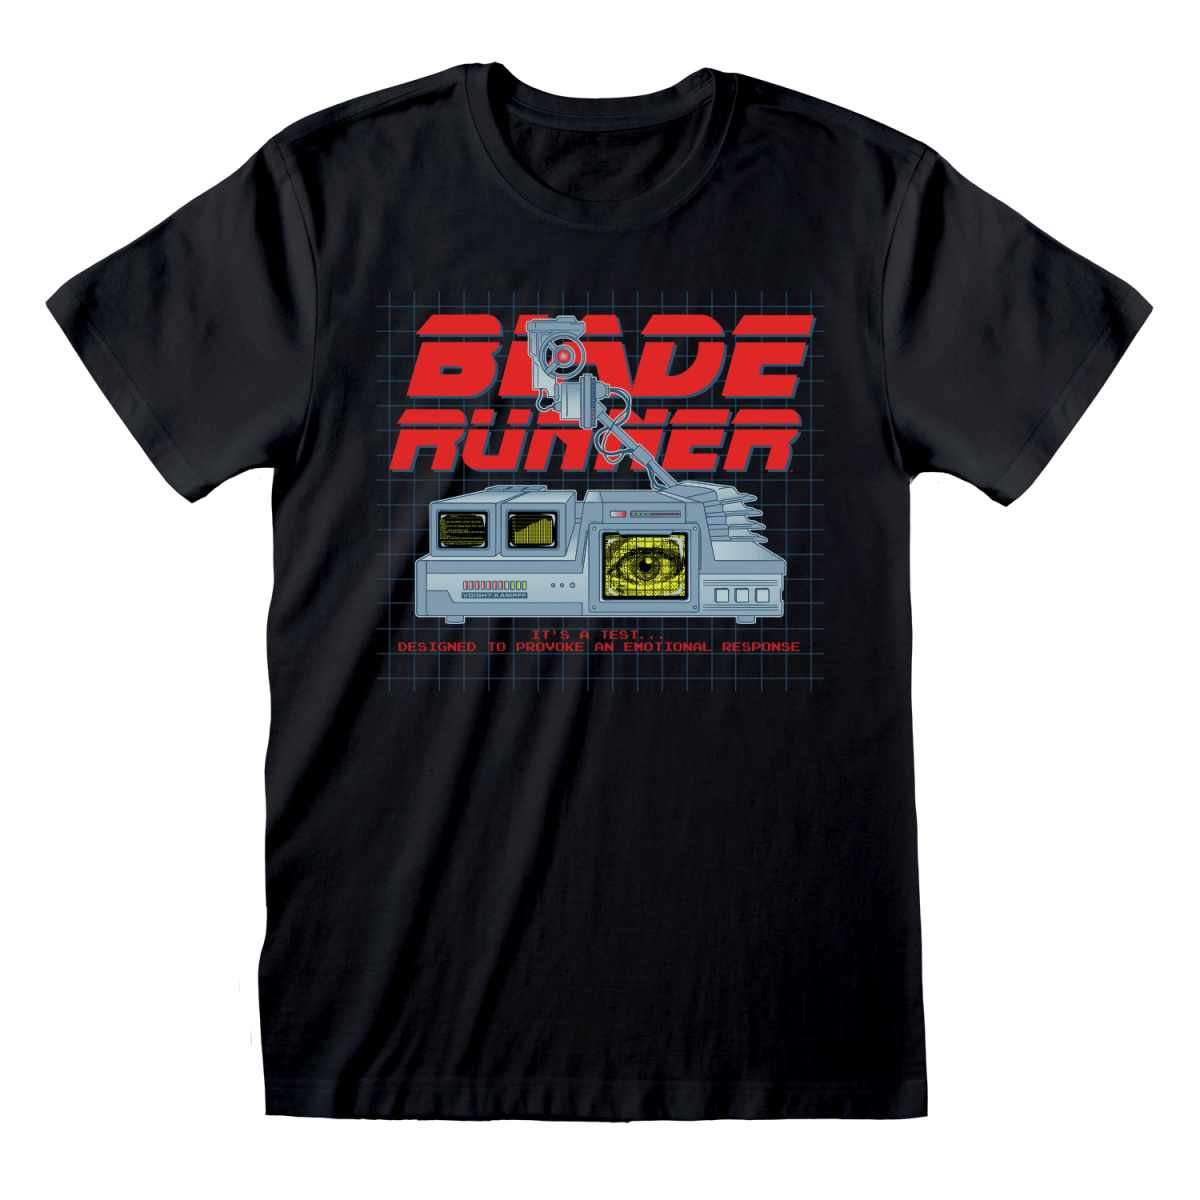 Blade Runner Poster T-Shirt